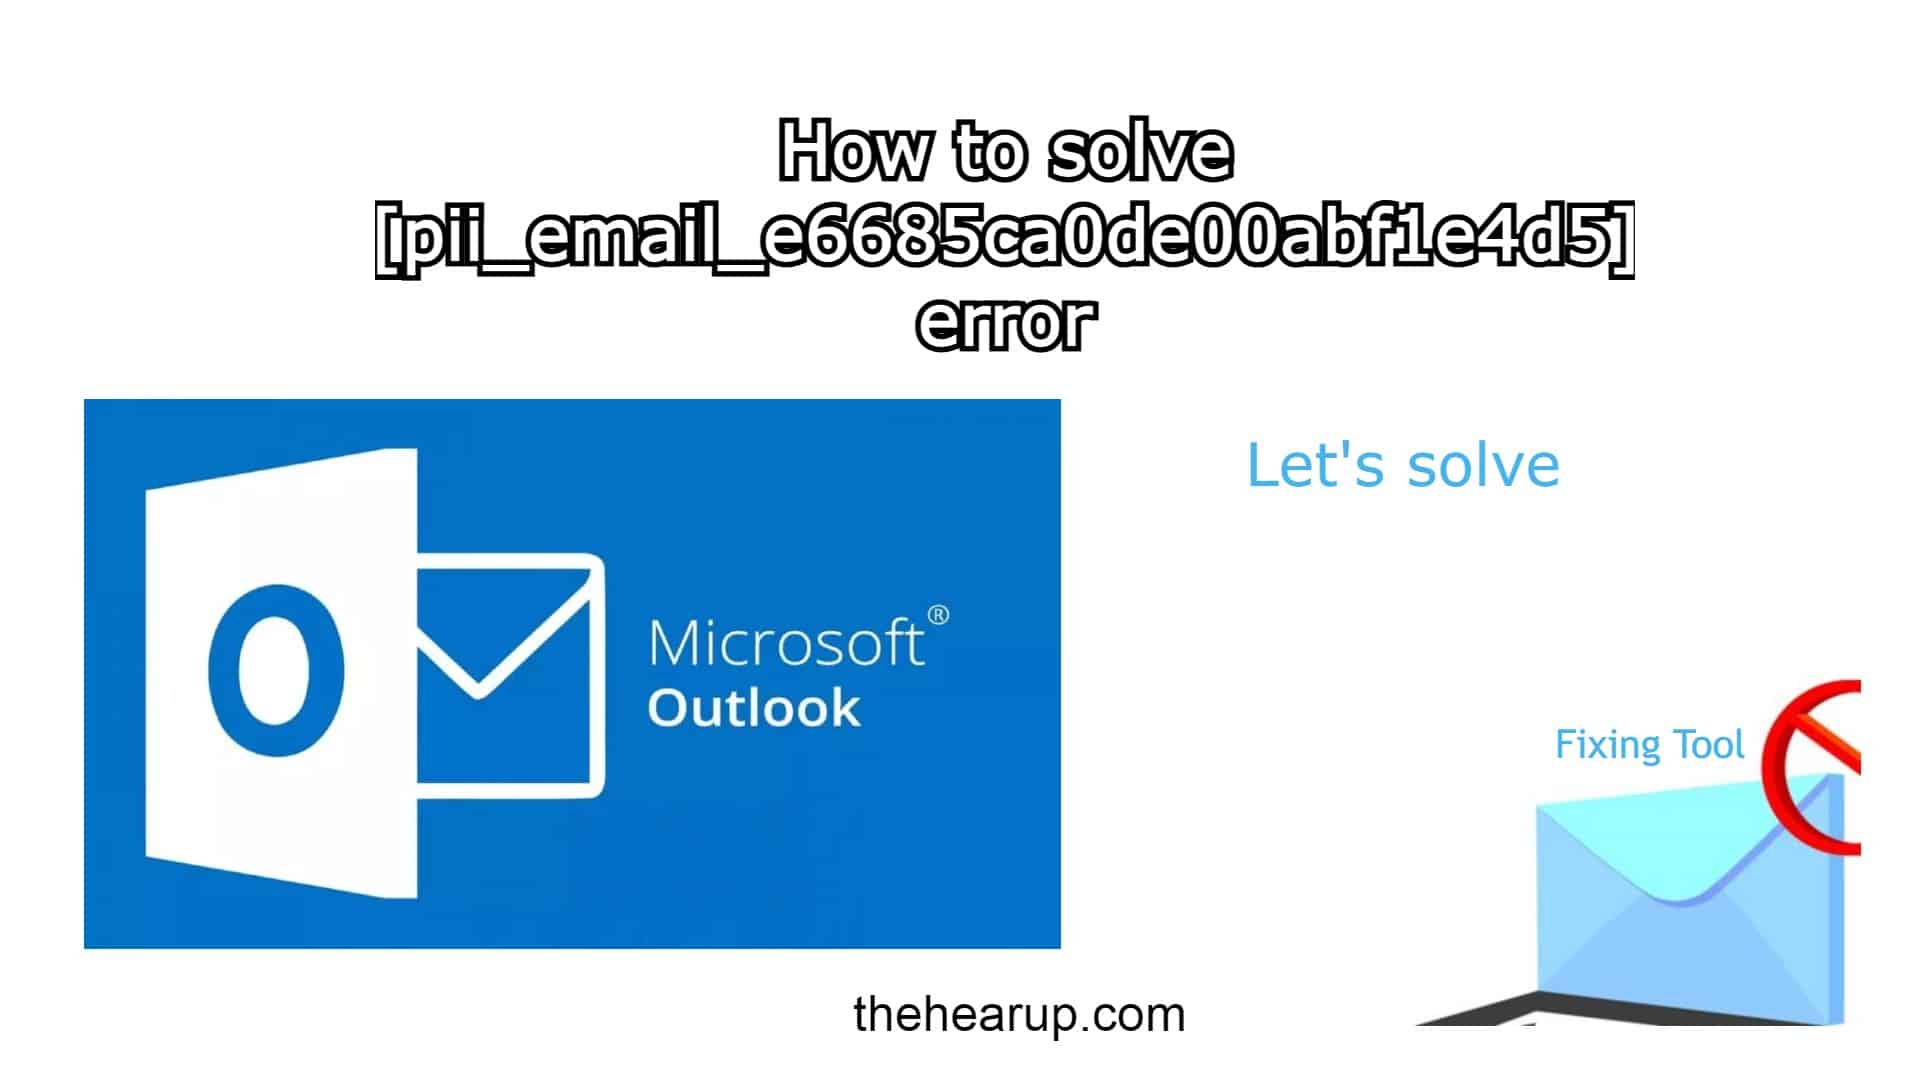 How to Solve [pii_email_e6685ca0de00abf1e4d5] Error Code?